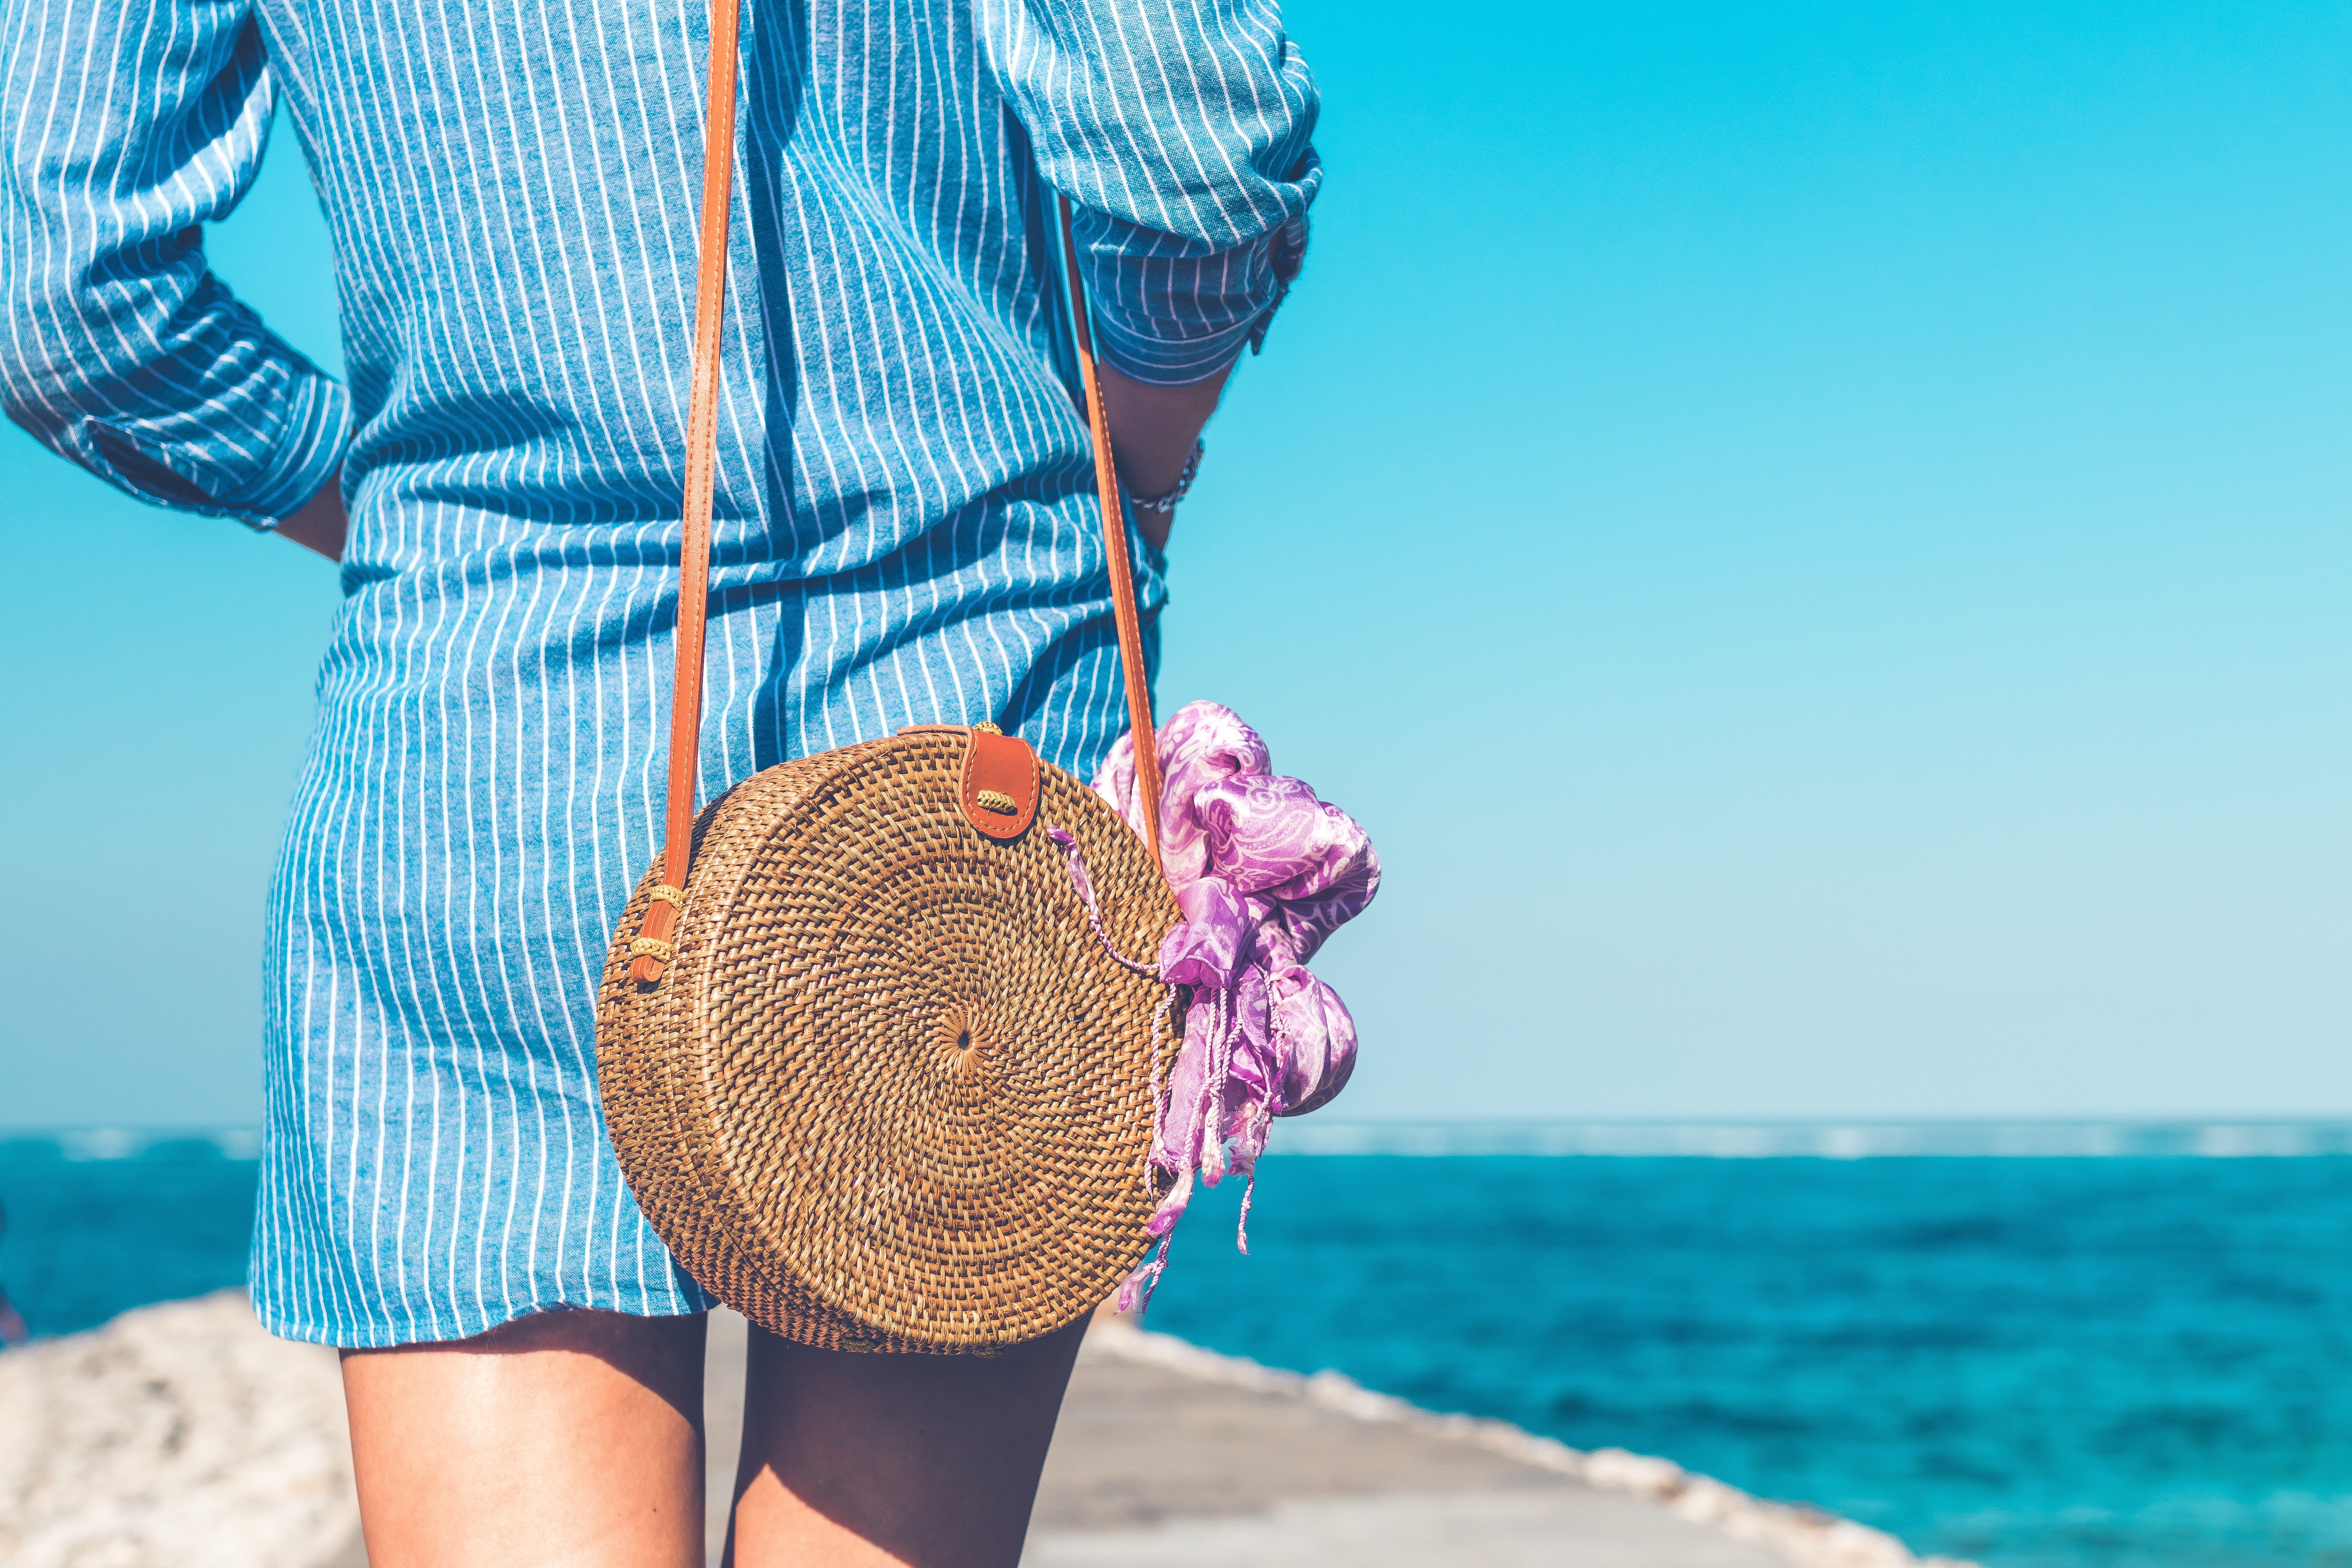 Aquesta és la bossa ideal per anar a la platja segons les teves vacances